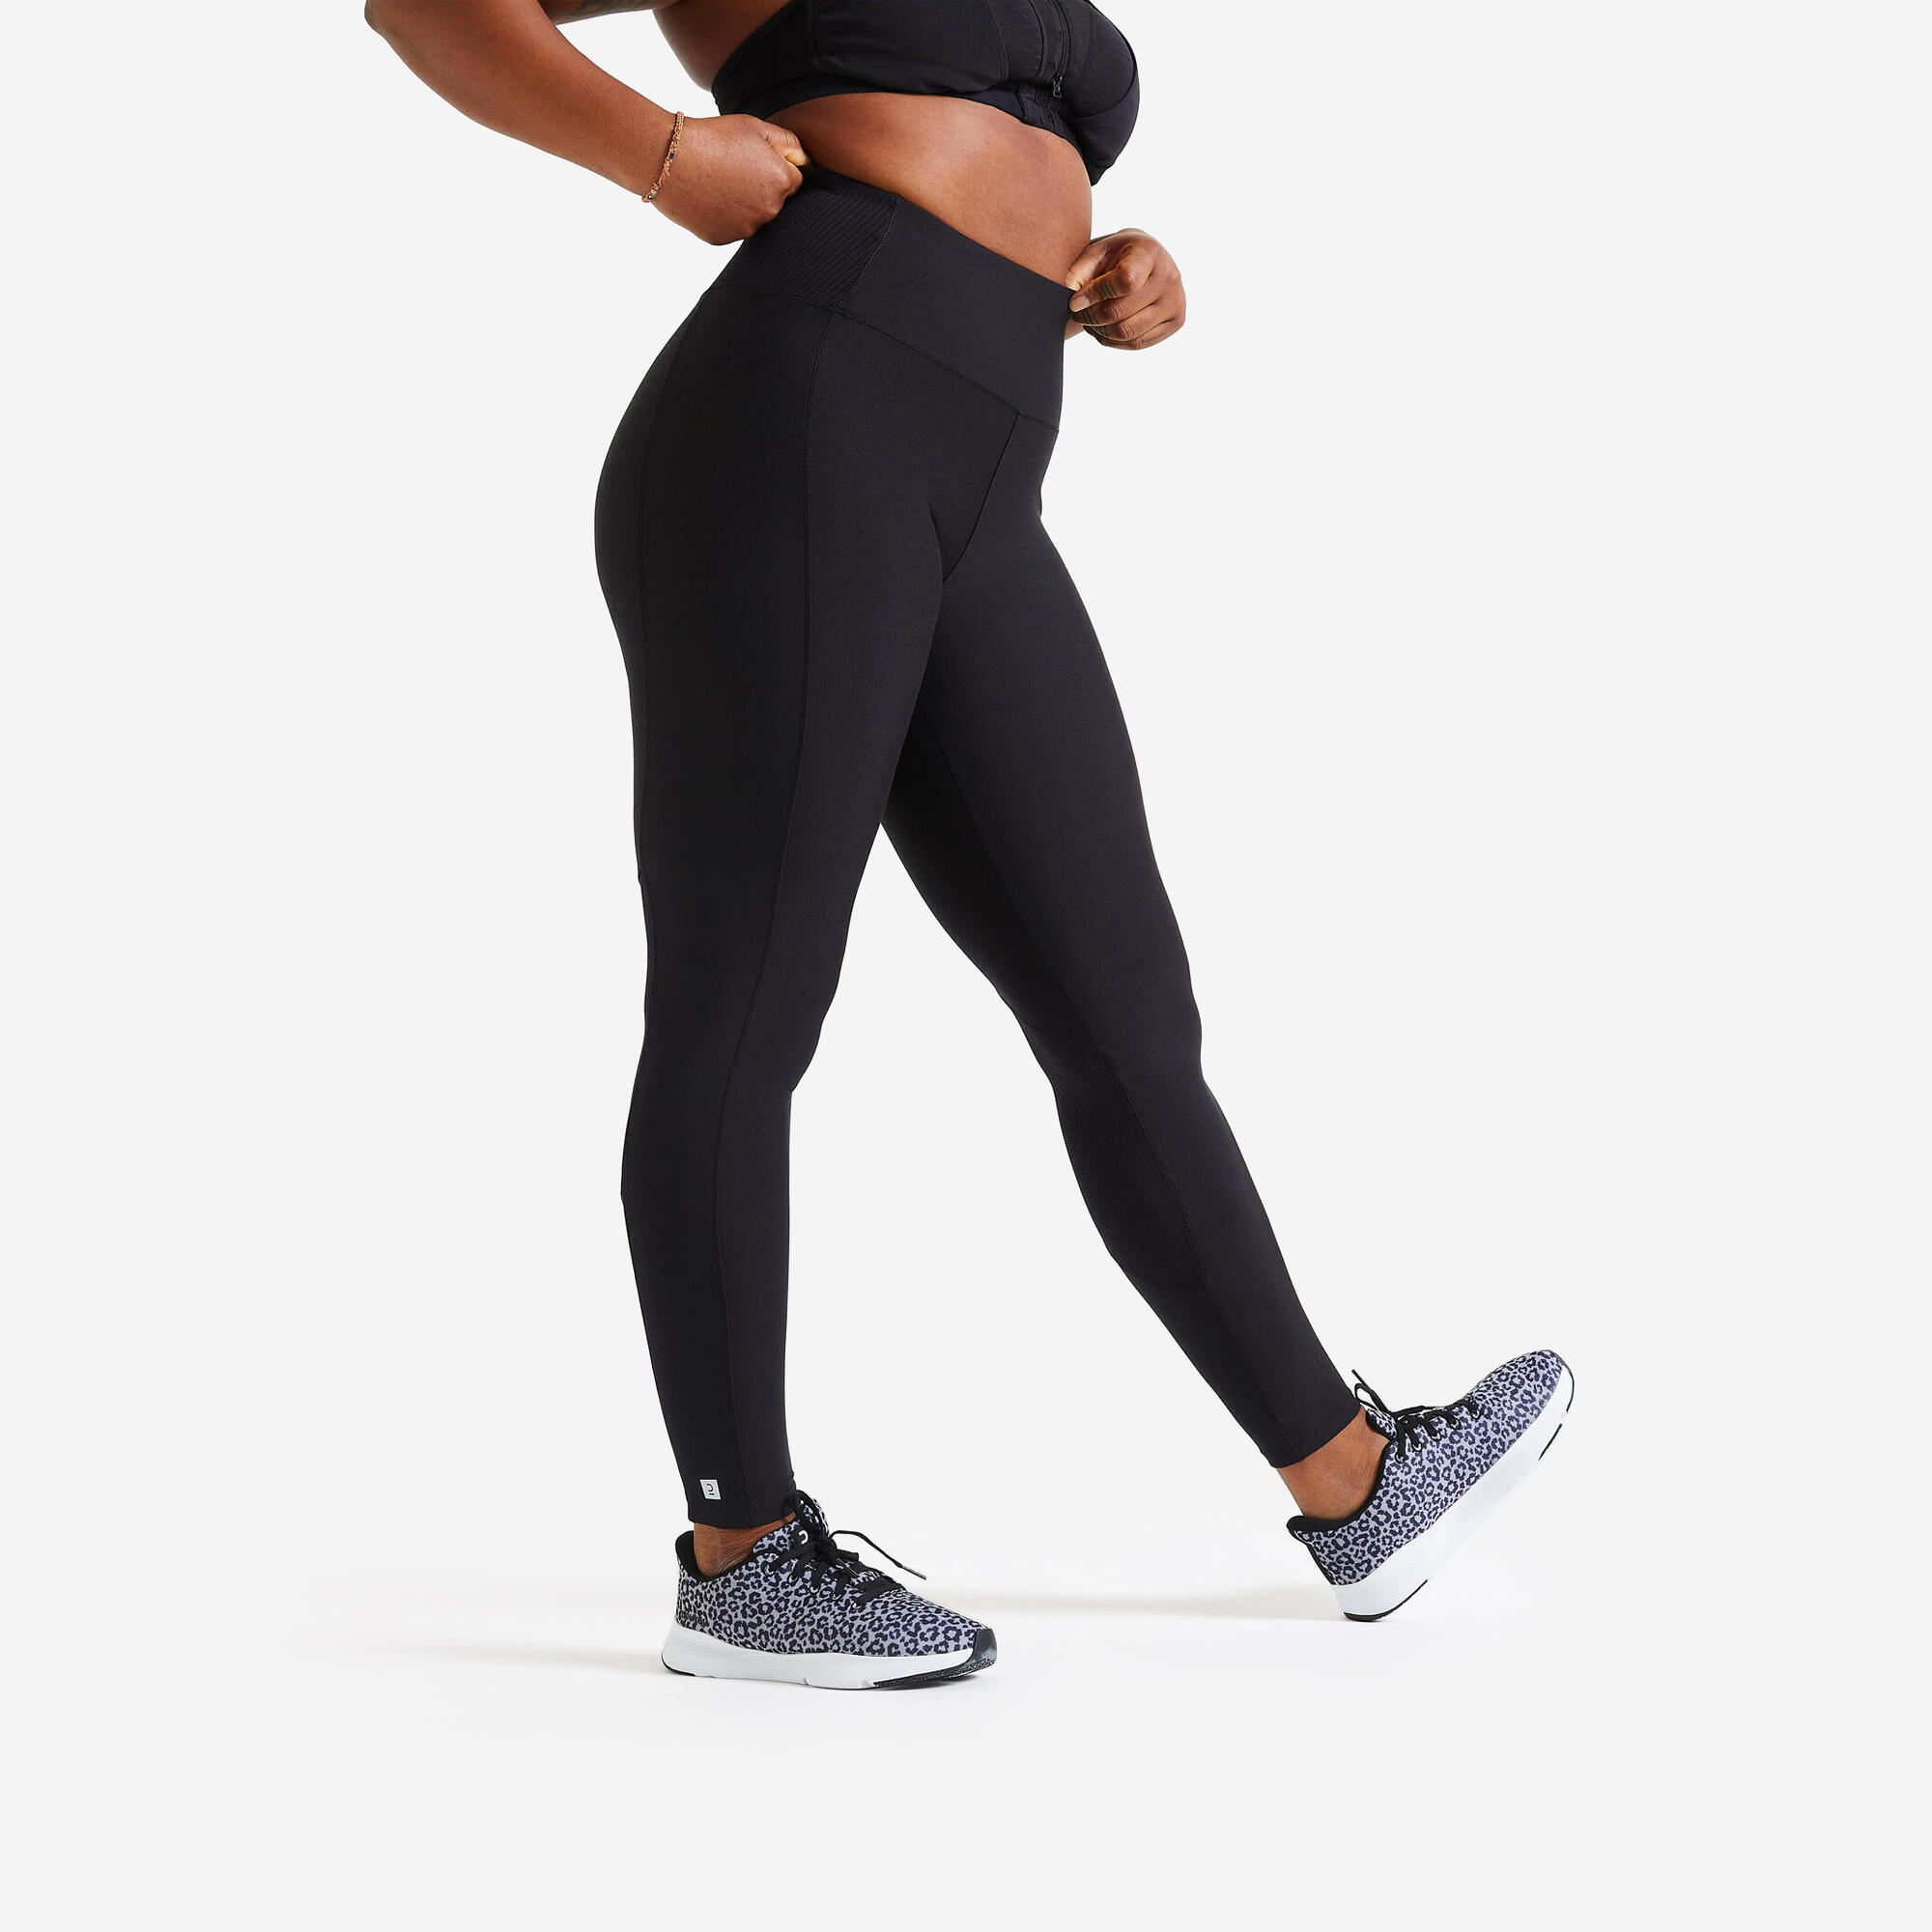 Legging sport taille haute femme – FTI 500 noir - [EN] smoked